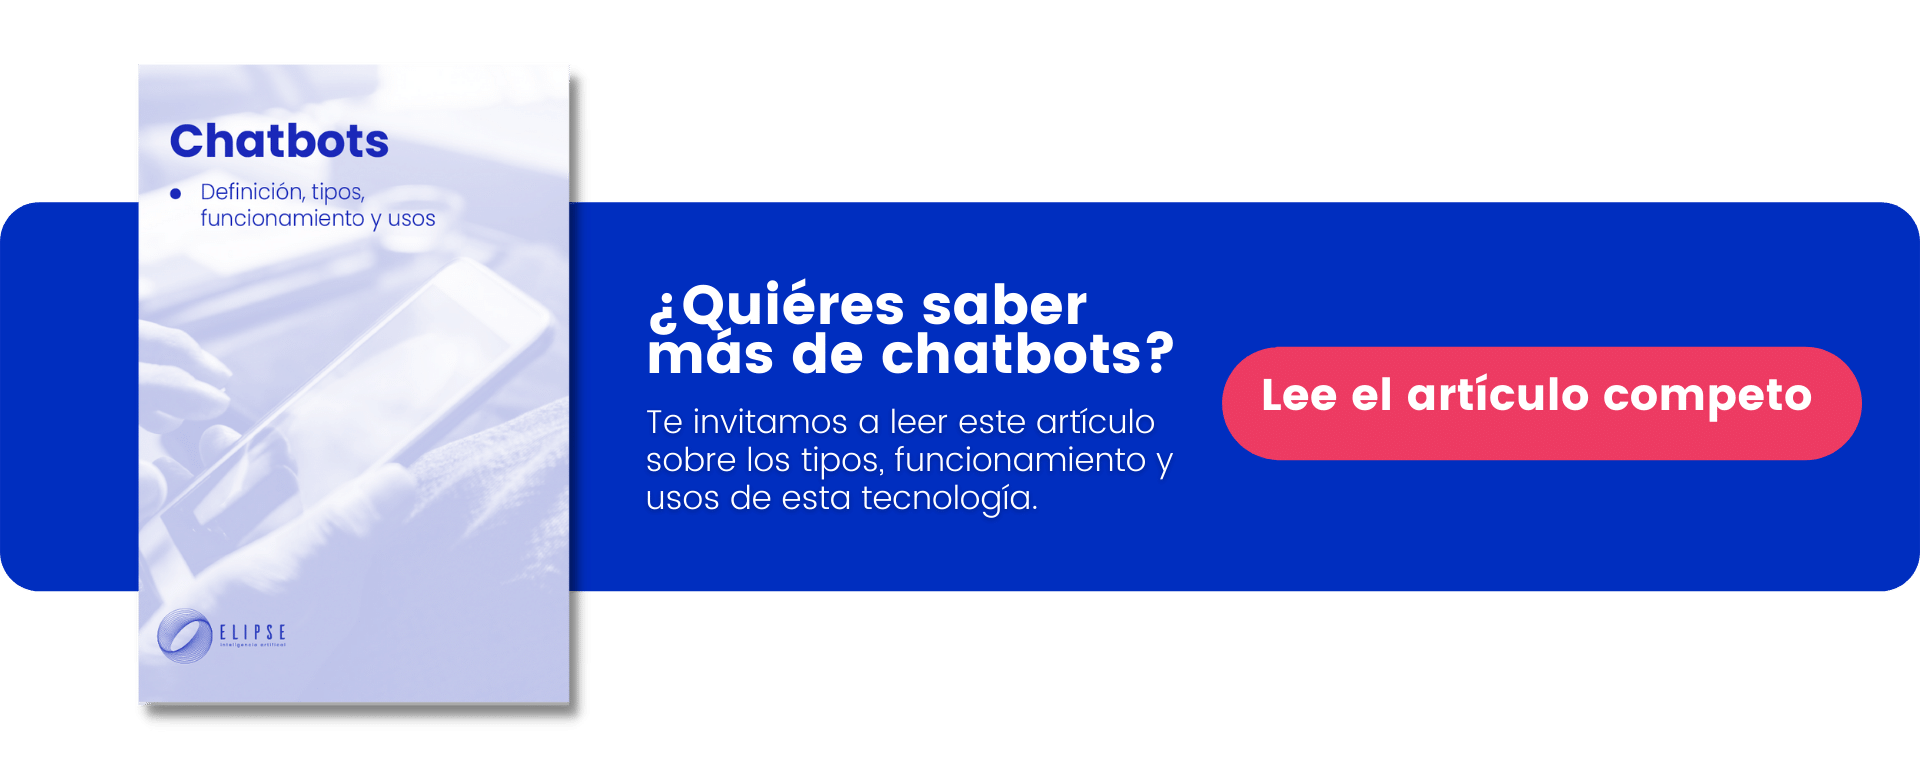 Lee más sobre Chatbots-1